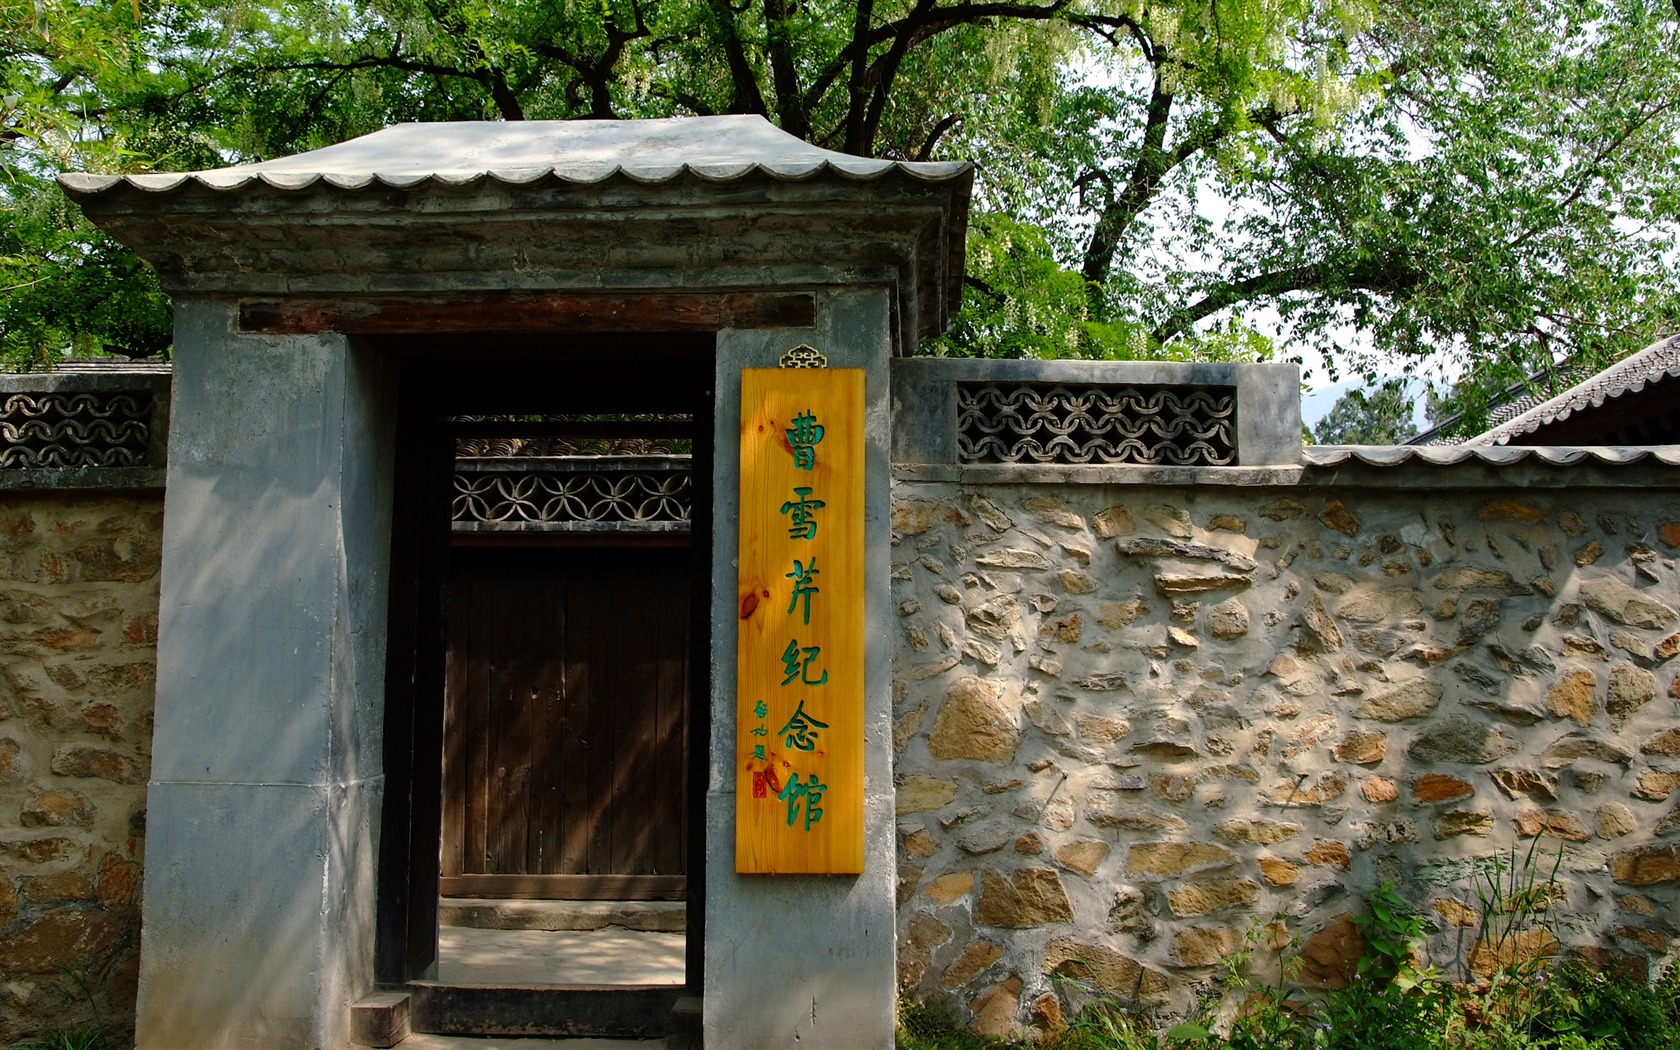 Xiangshan jardín principios del verano (obras barras de refuerzo) #17 - 1680x1050